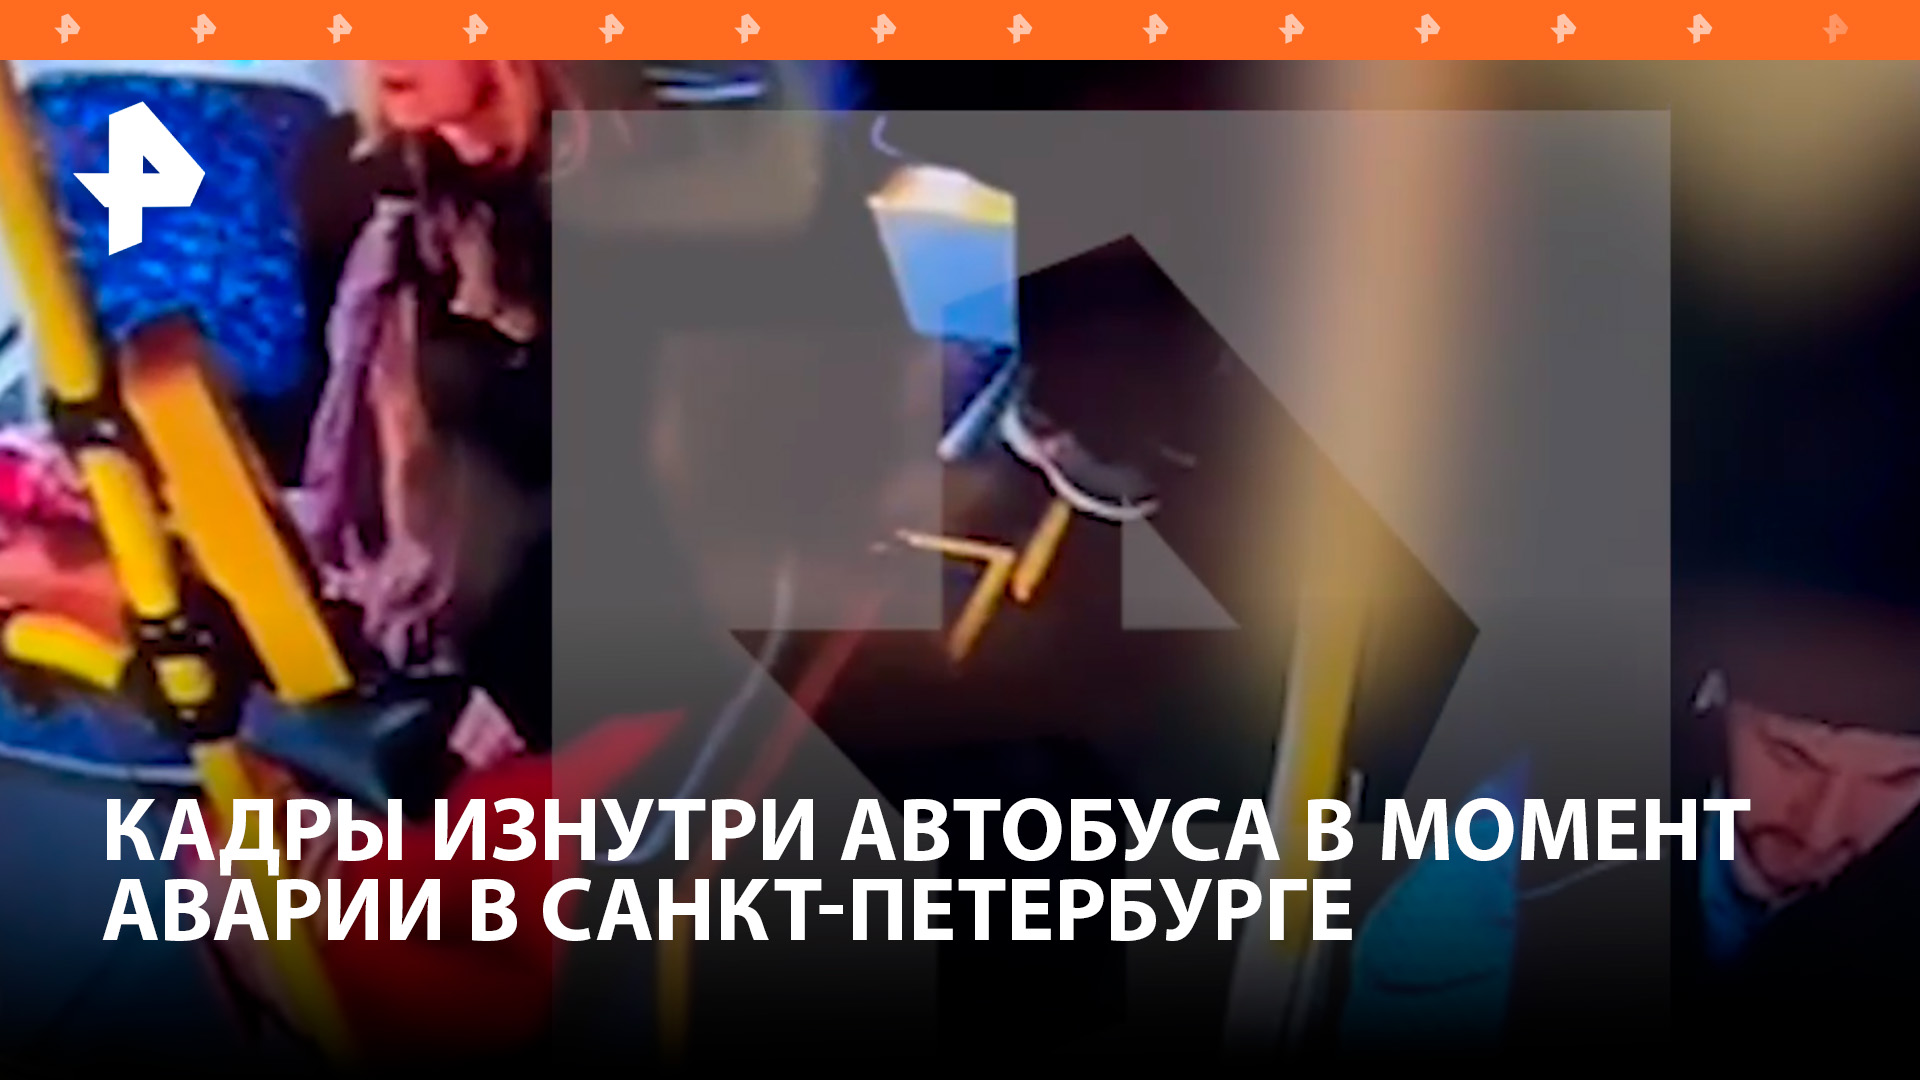 Кадры из салона автобуса прямо в момент смертельной аварии в Санкт-Петербурге / РЕН Новости